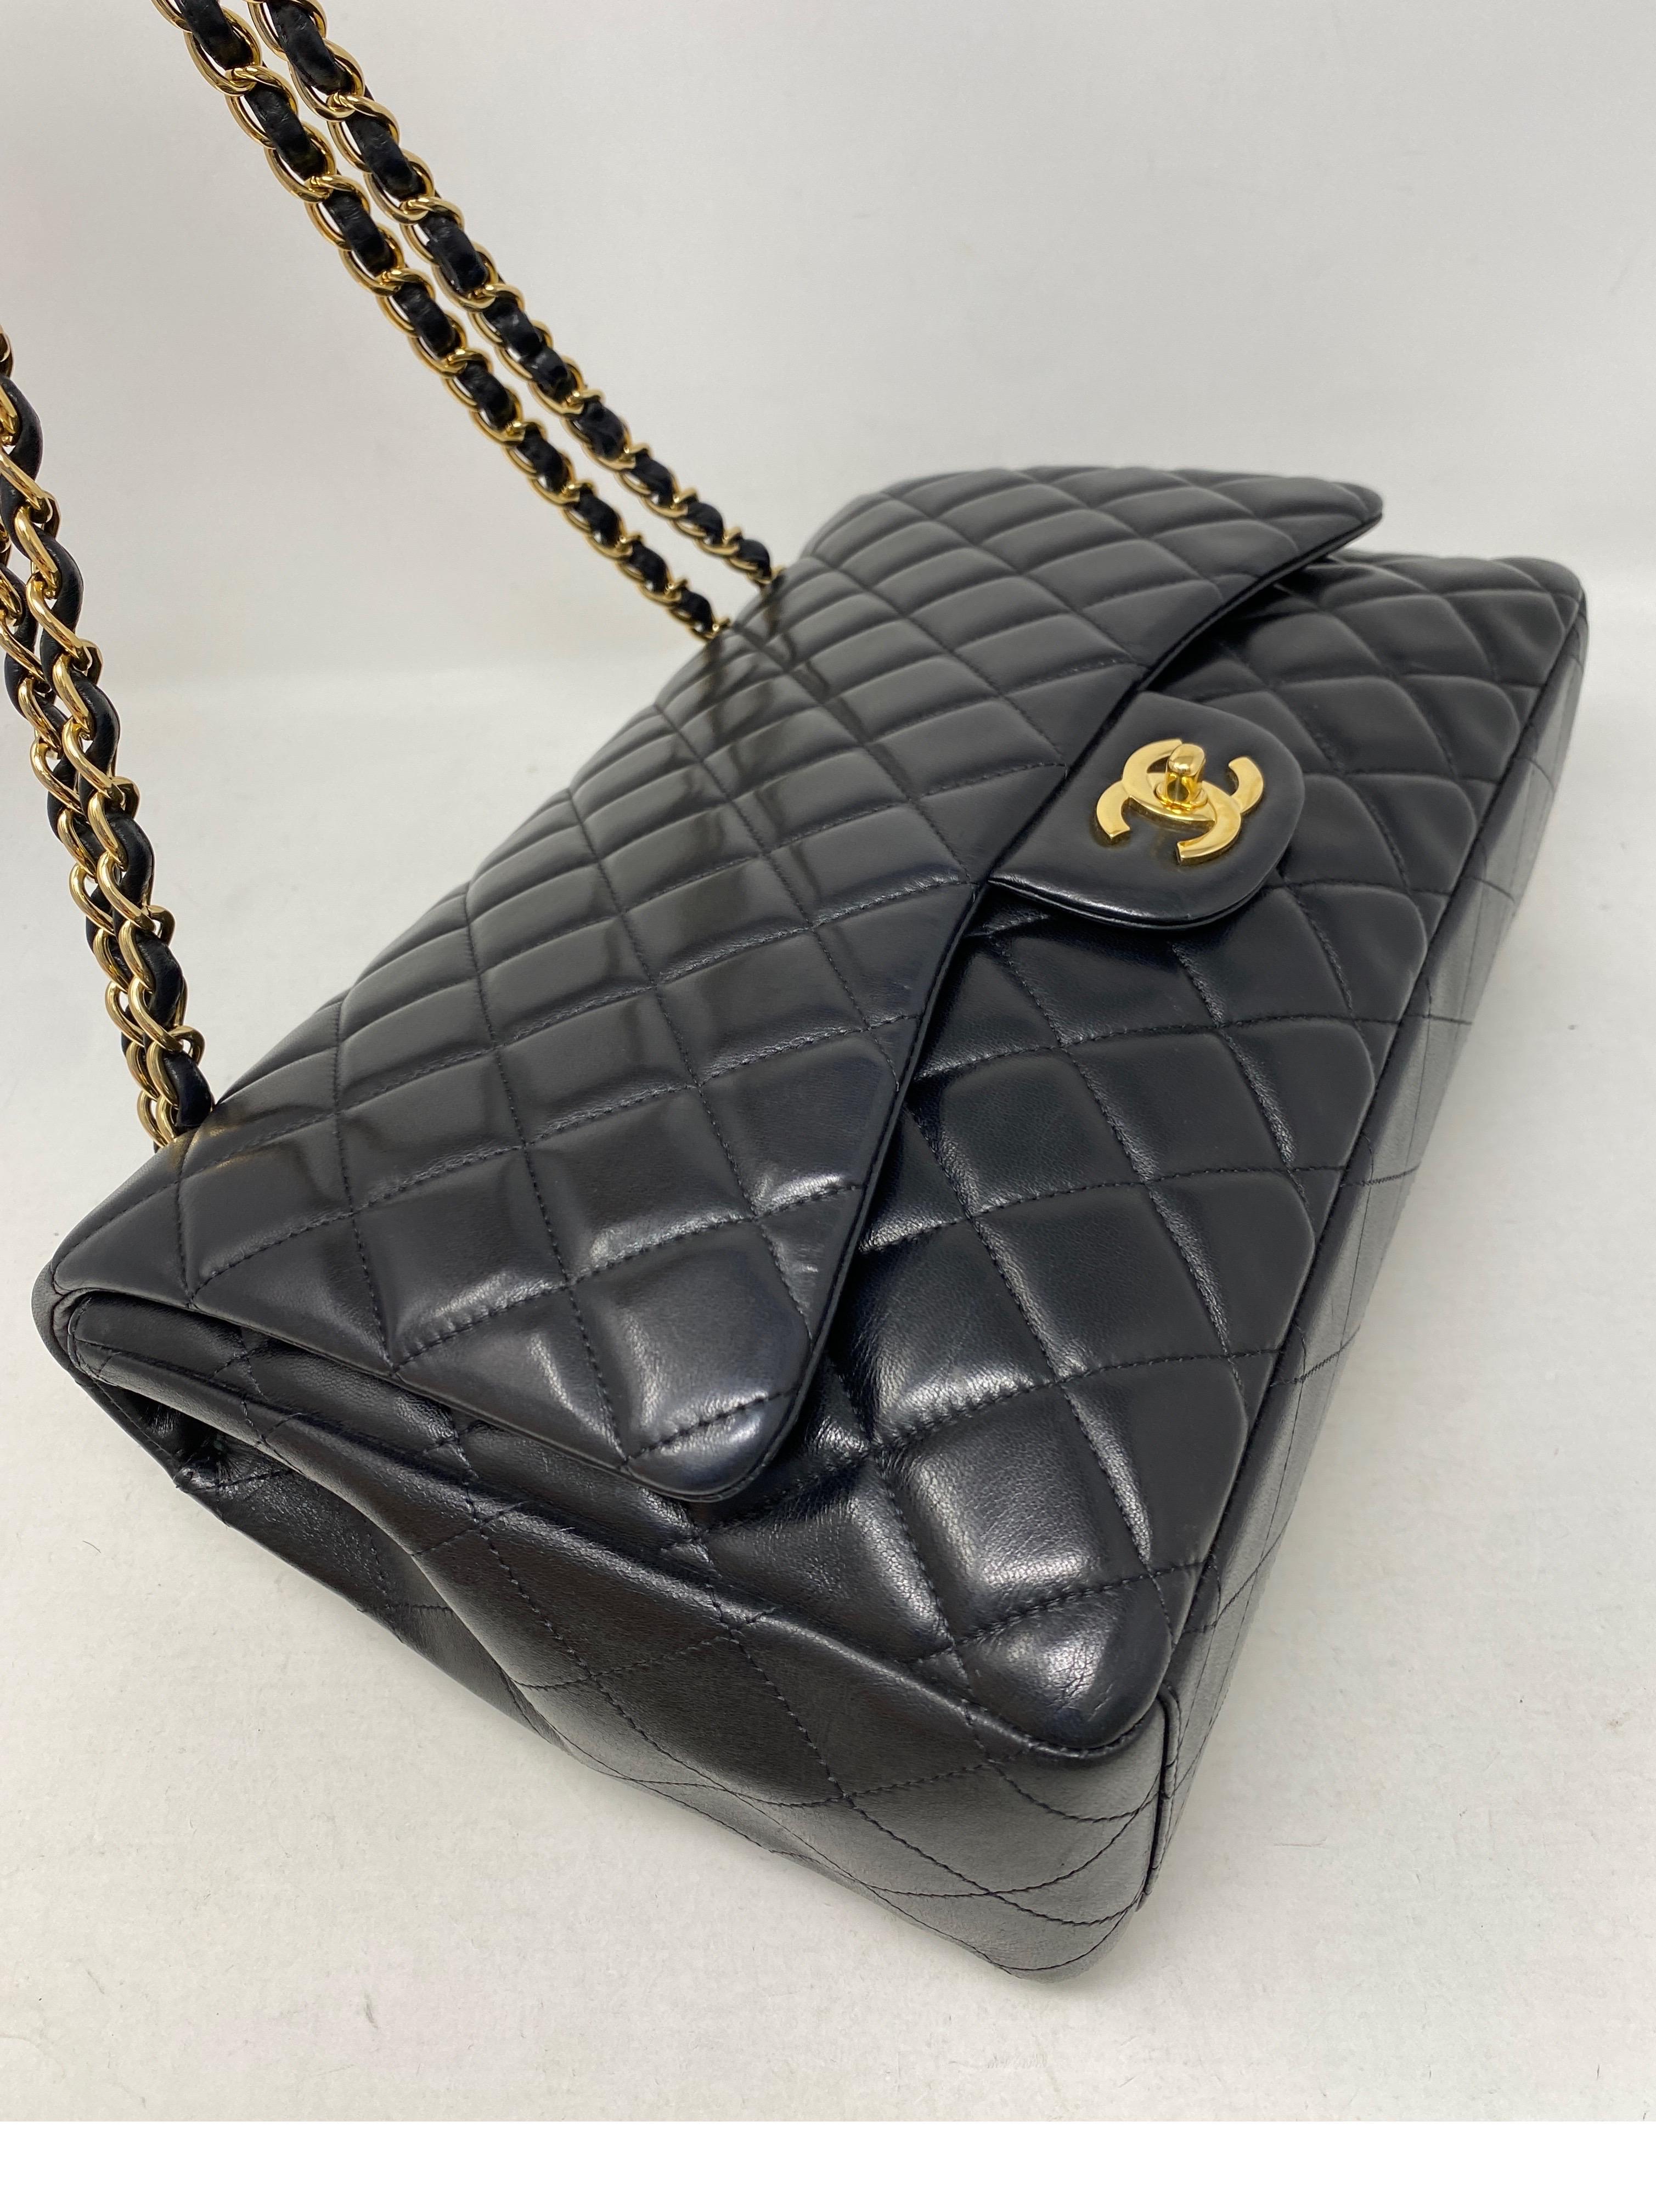 Women's or Men's Chanel Black Maxi Lambskin Single Flap Bag 